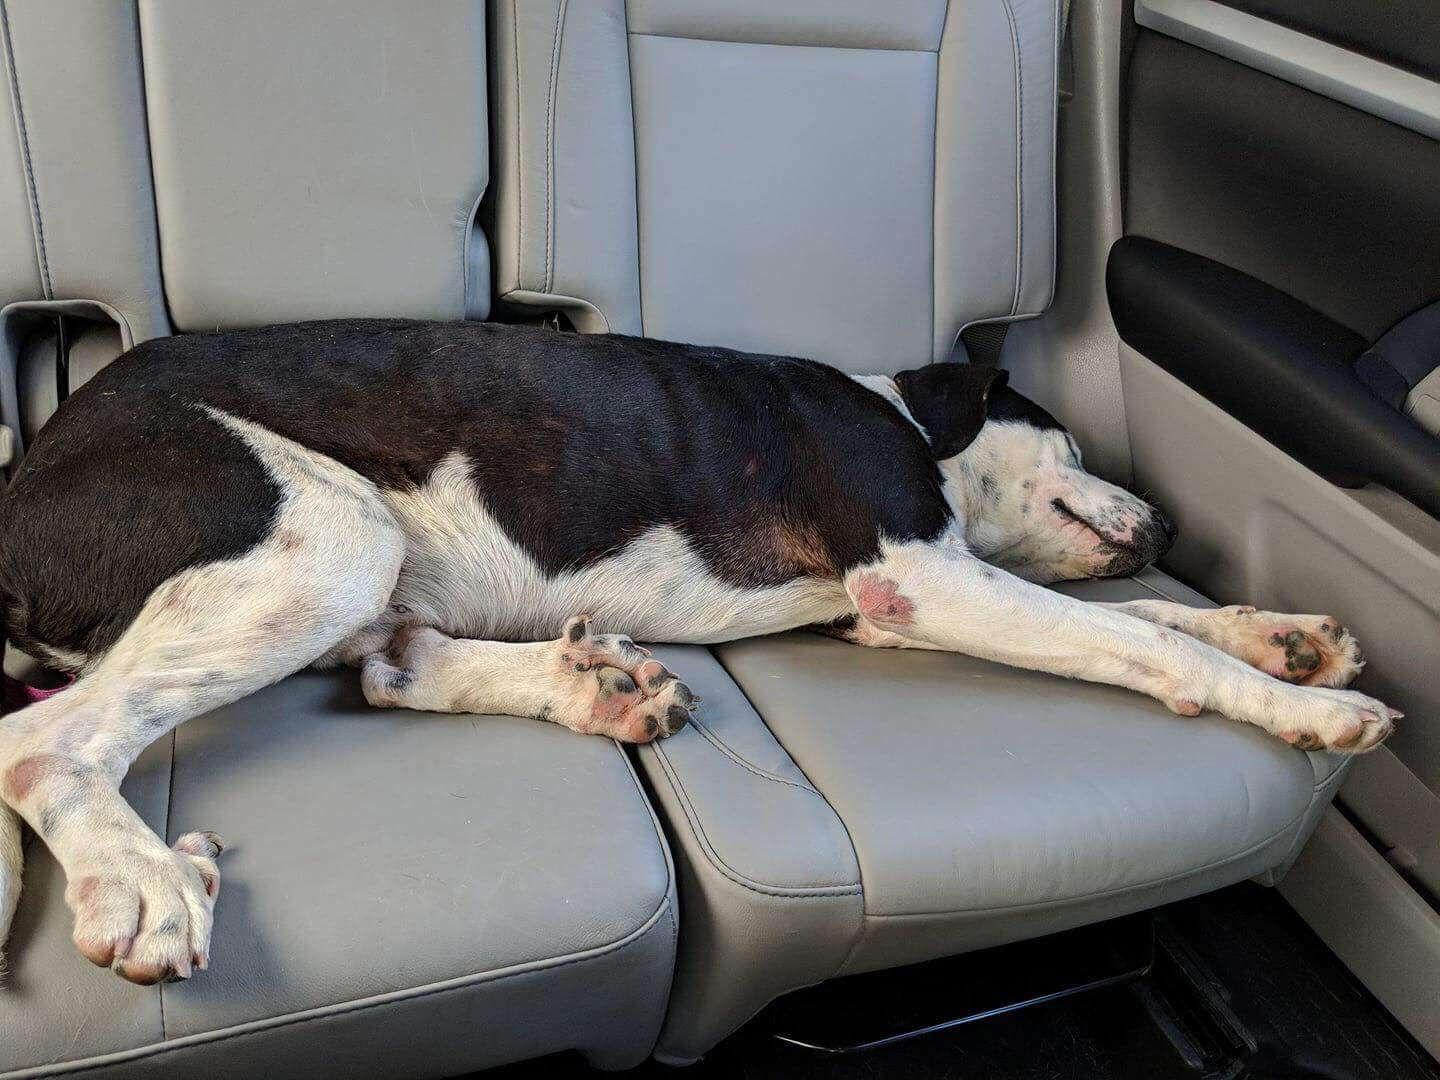 Dog sleeping on backseat of car